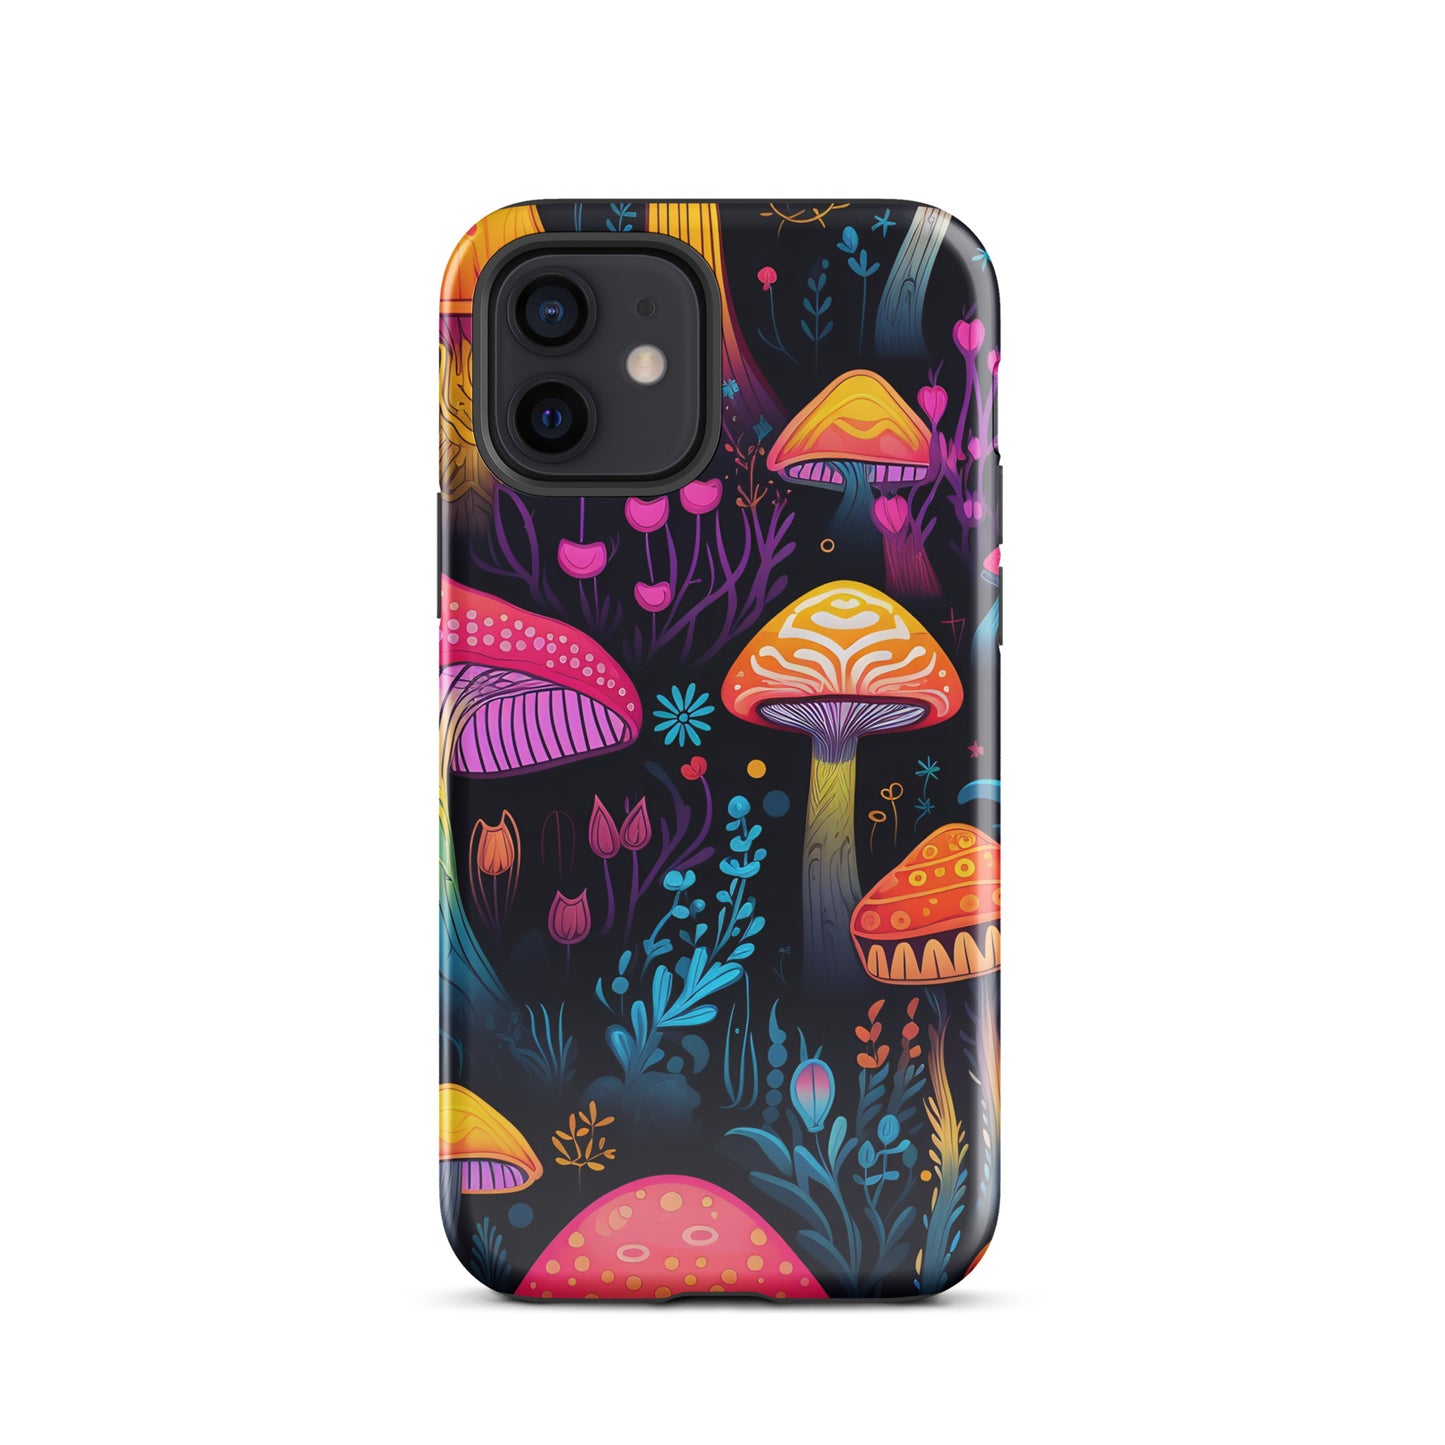 Neon Magic Mushroom Tough Case for iPhone®